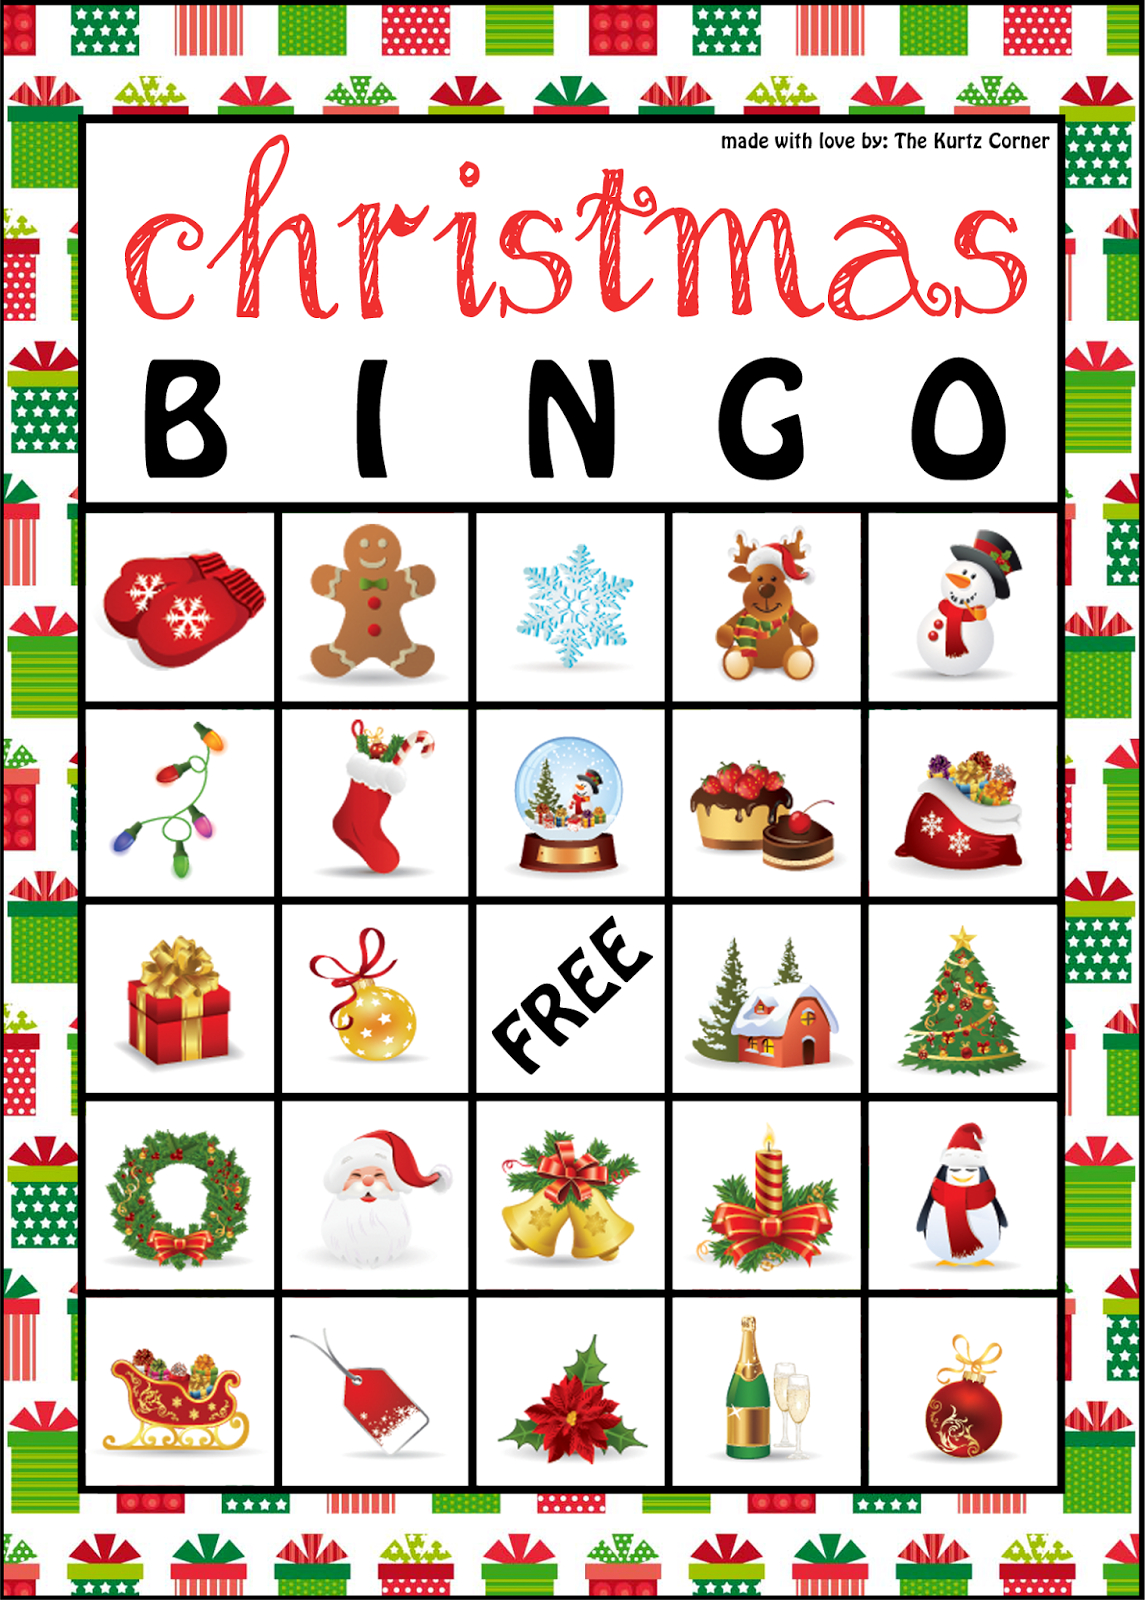 Free Printable Christmas Bingo Cards Free Printable